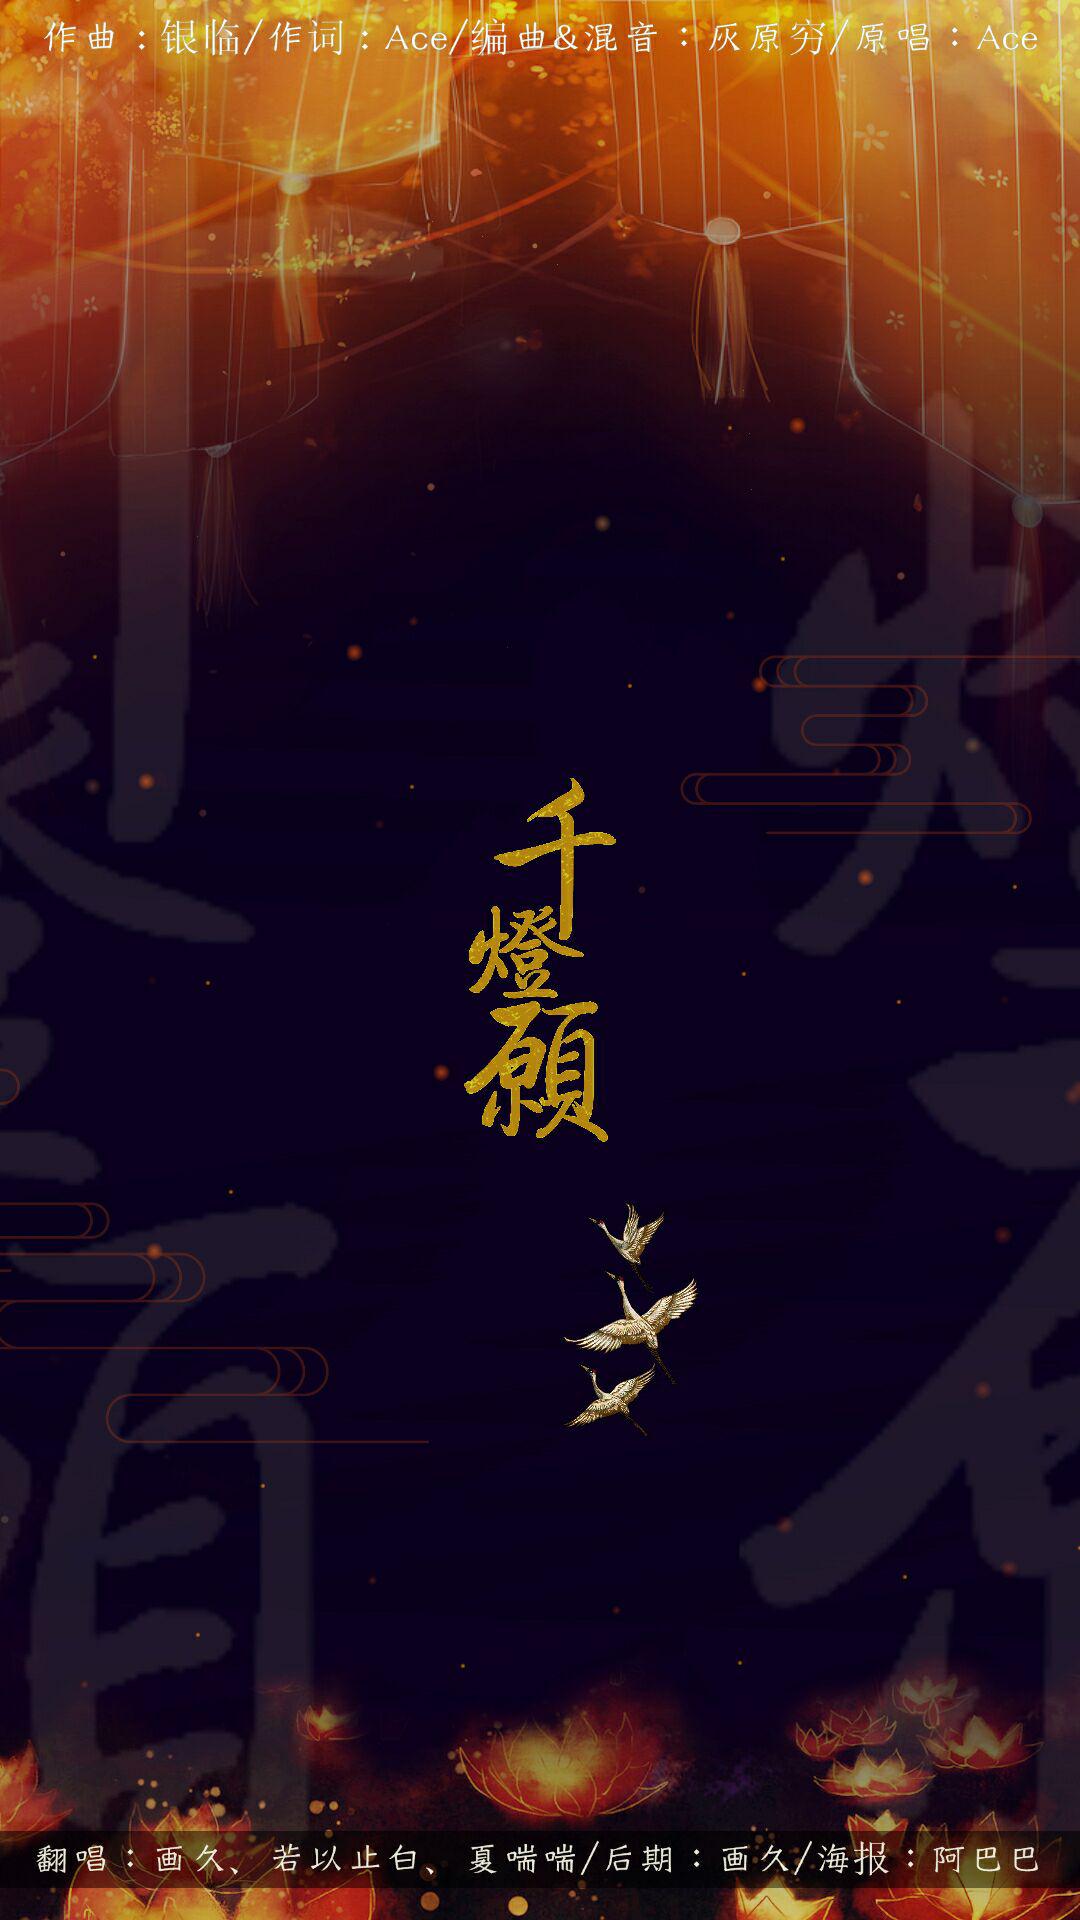 千灯愿(cover:ace组合)